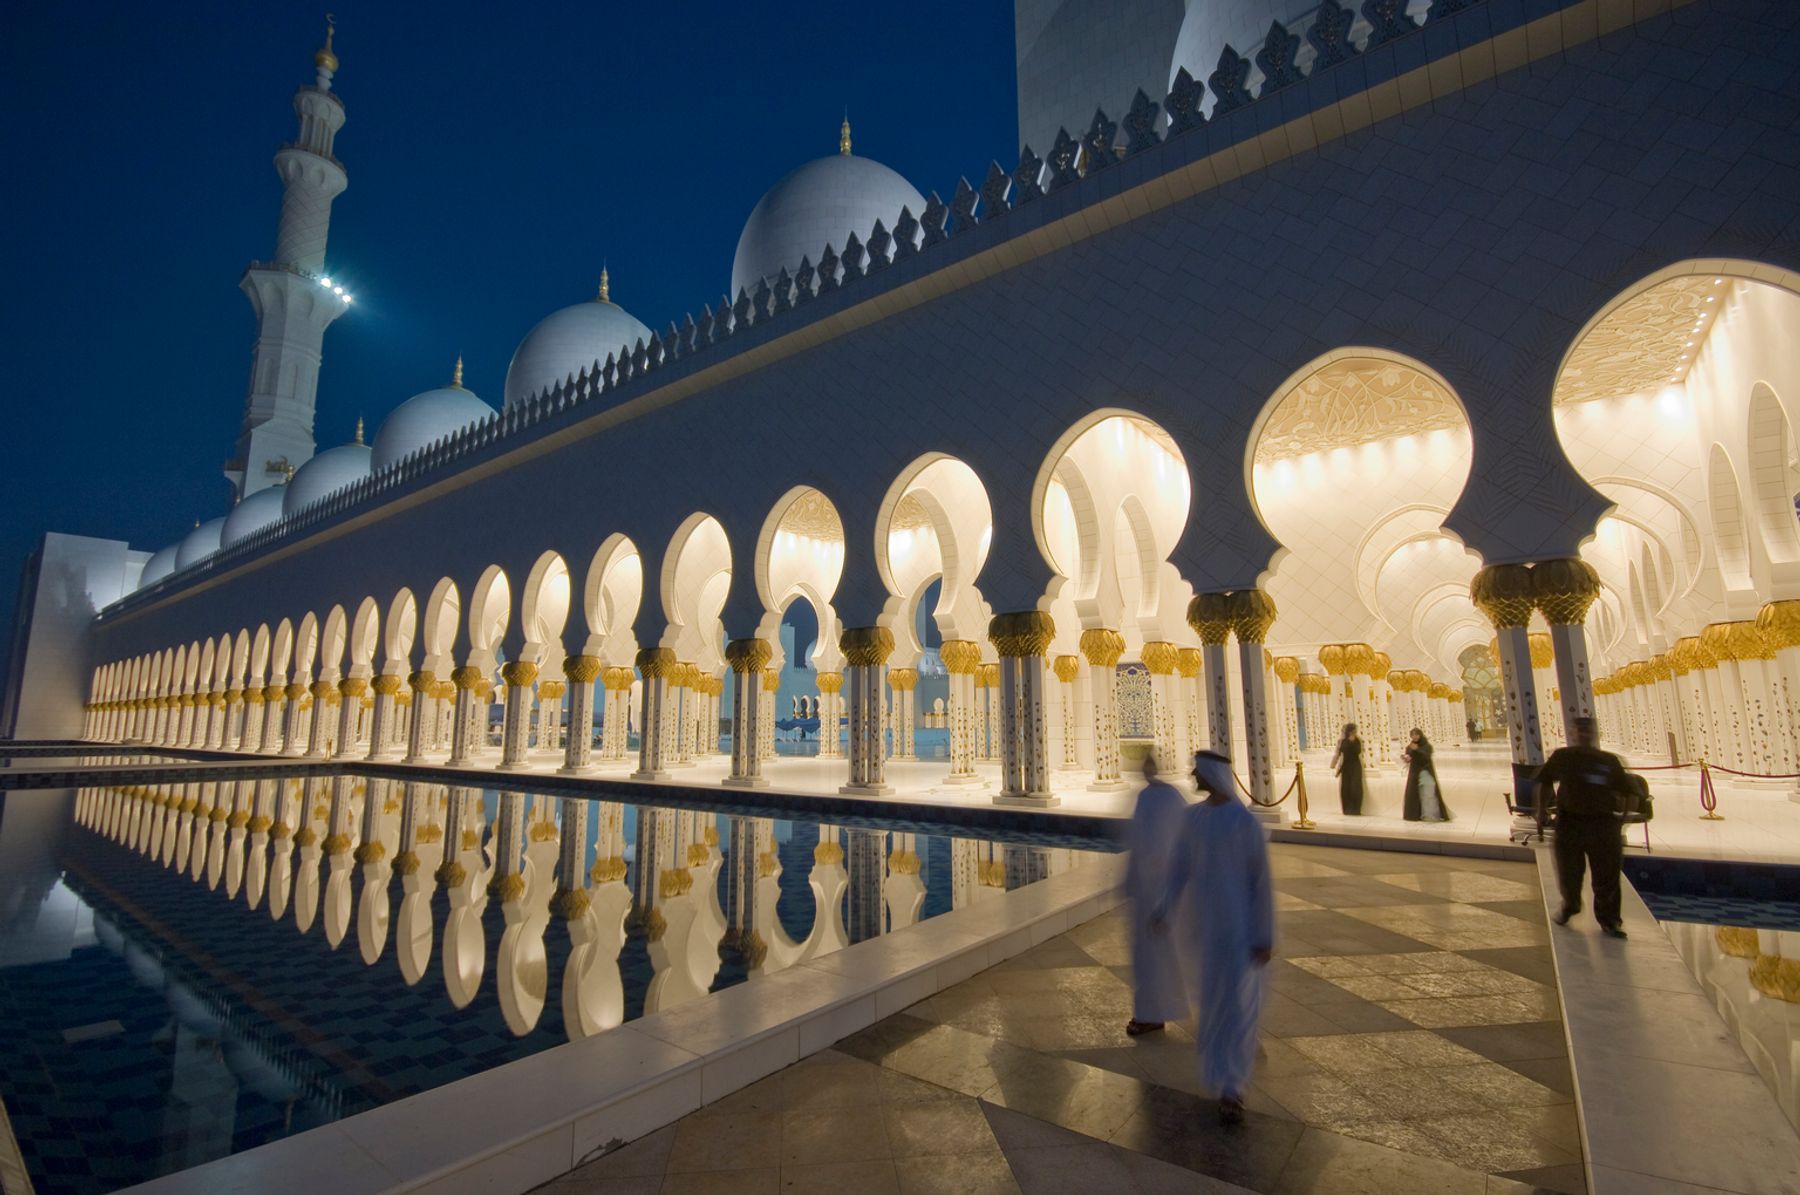 Sheikh Zayed bin Sultan Al Nahyan Moschee, Abu Dhabi. Architektur: Yusef Abdelki (Entwurf), Halcrow, Dubai Office (Ausführung). Innenarchitektur: Spatium Architects, Mailand. Lichtplanung: Speirs and Major Associates, Edinburgh.